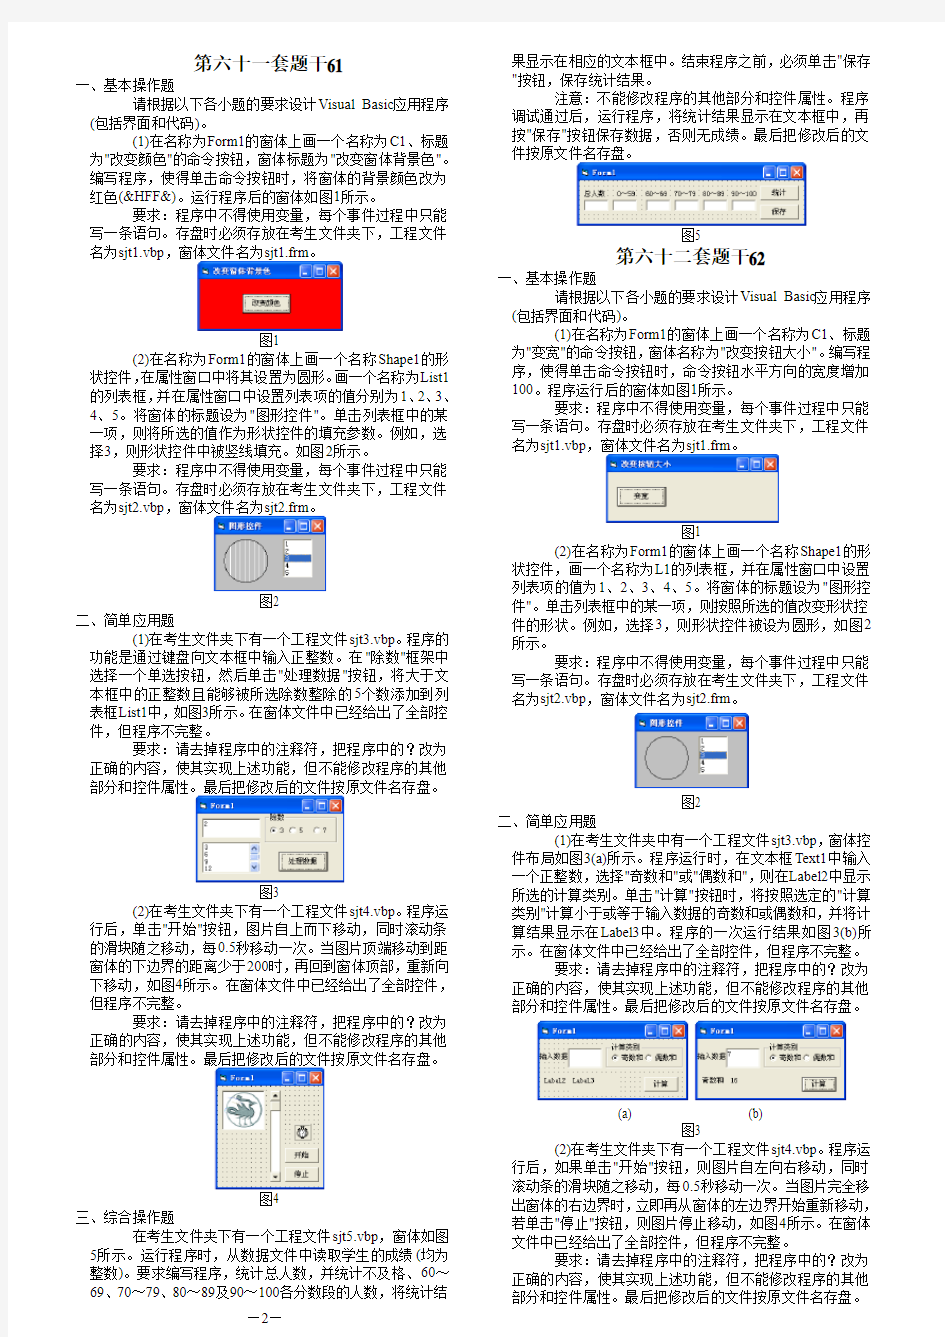 2013年3月全国计算机等级考试二级VB无纸化上机题题库及答案解析(4)